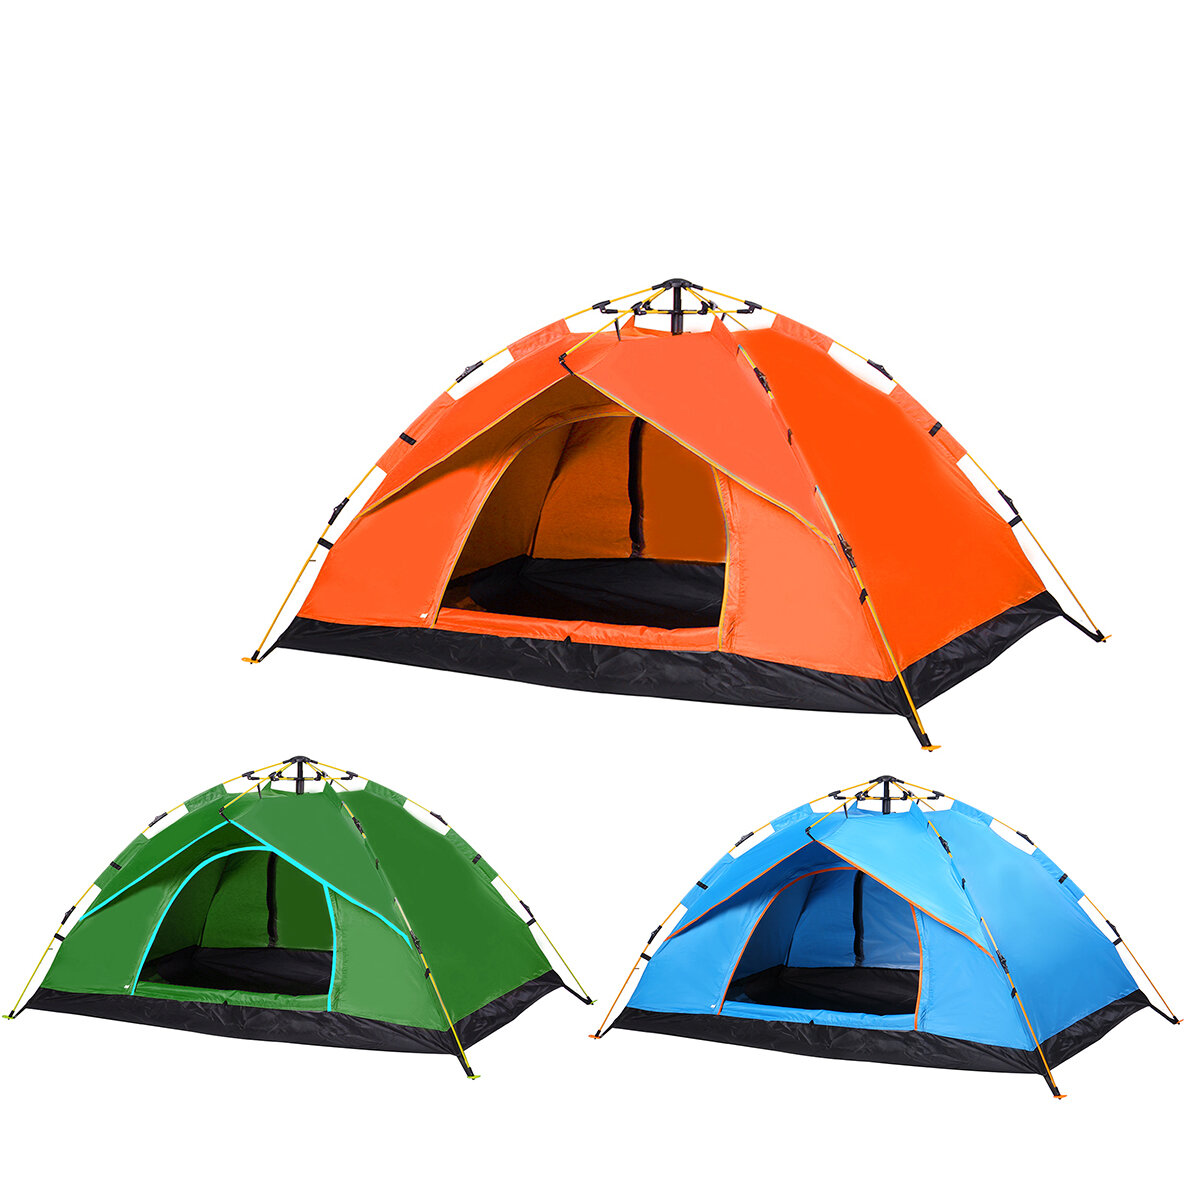 ki: Jednowarstwowy, w pełni automatyczny namiot campingowy dla 1-2 osób, składany, gruby i wodoodporny, idealny na wyjazdy i wycieczki na świeżym powietrzu.